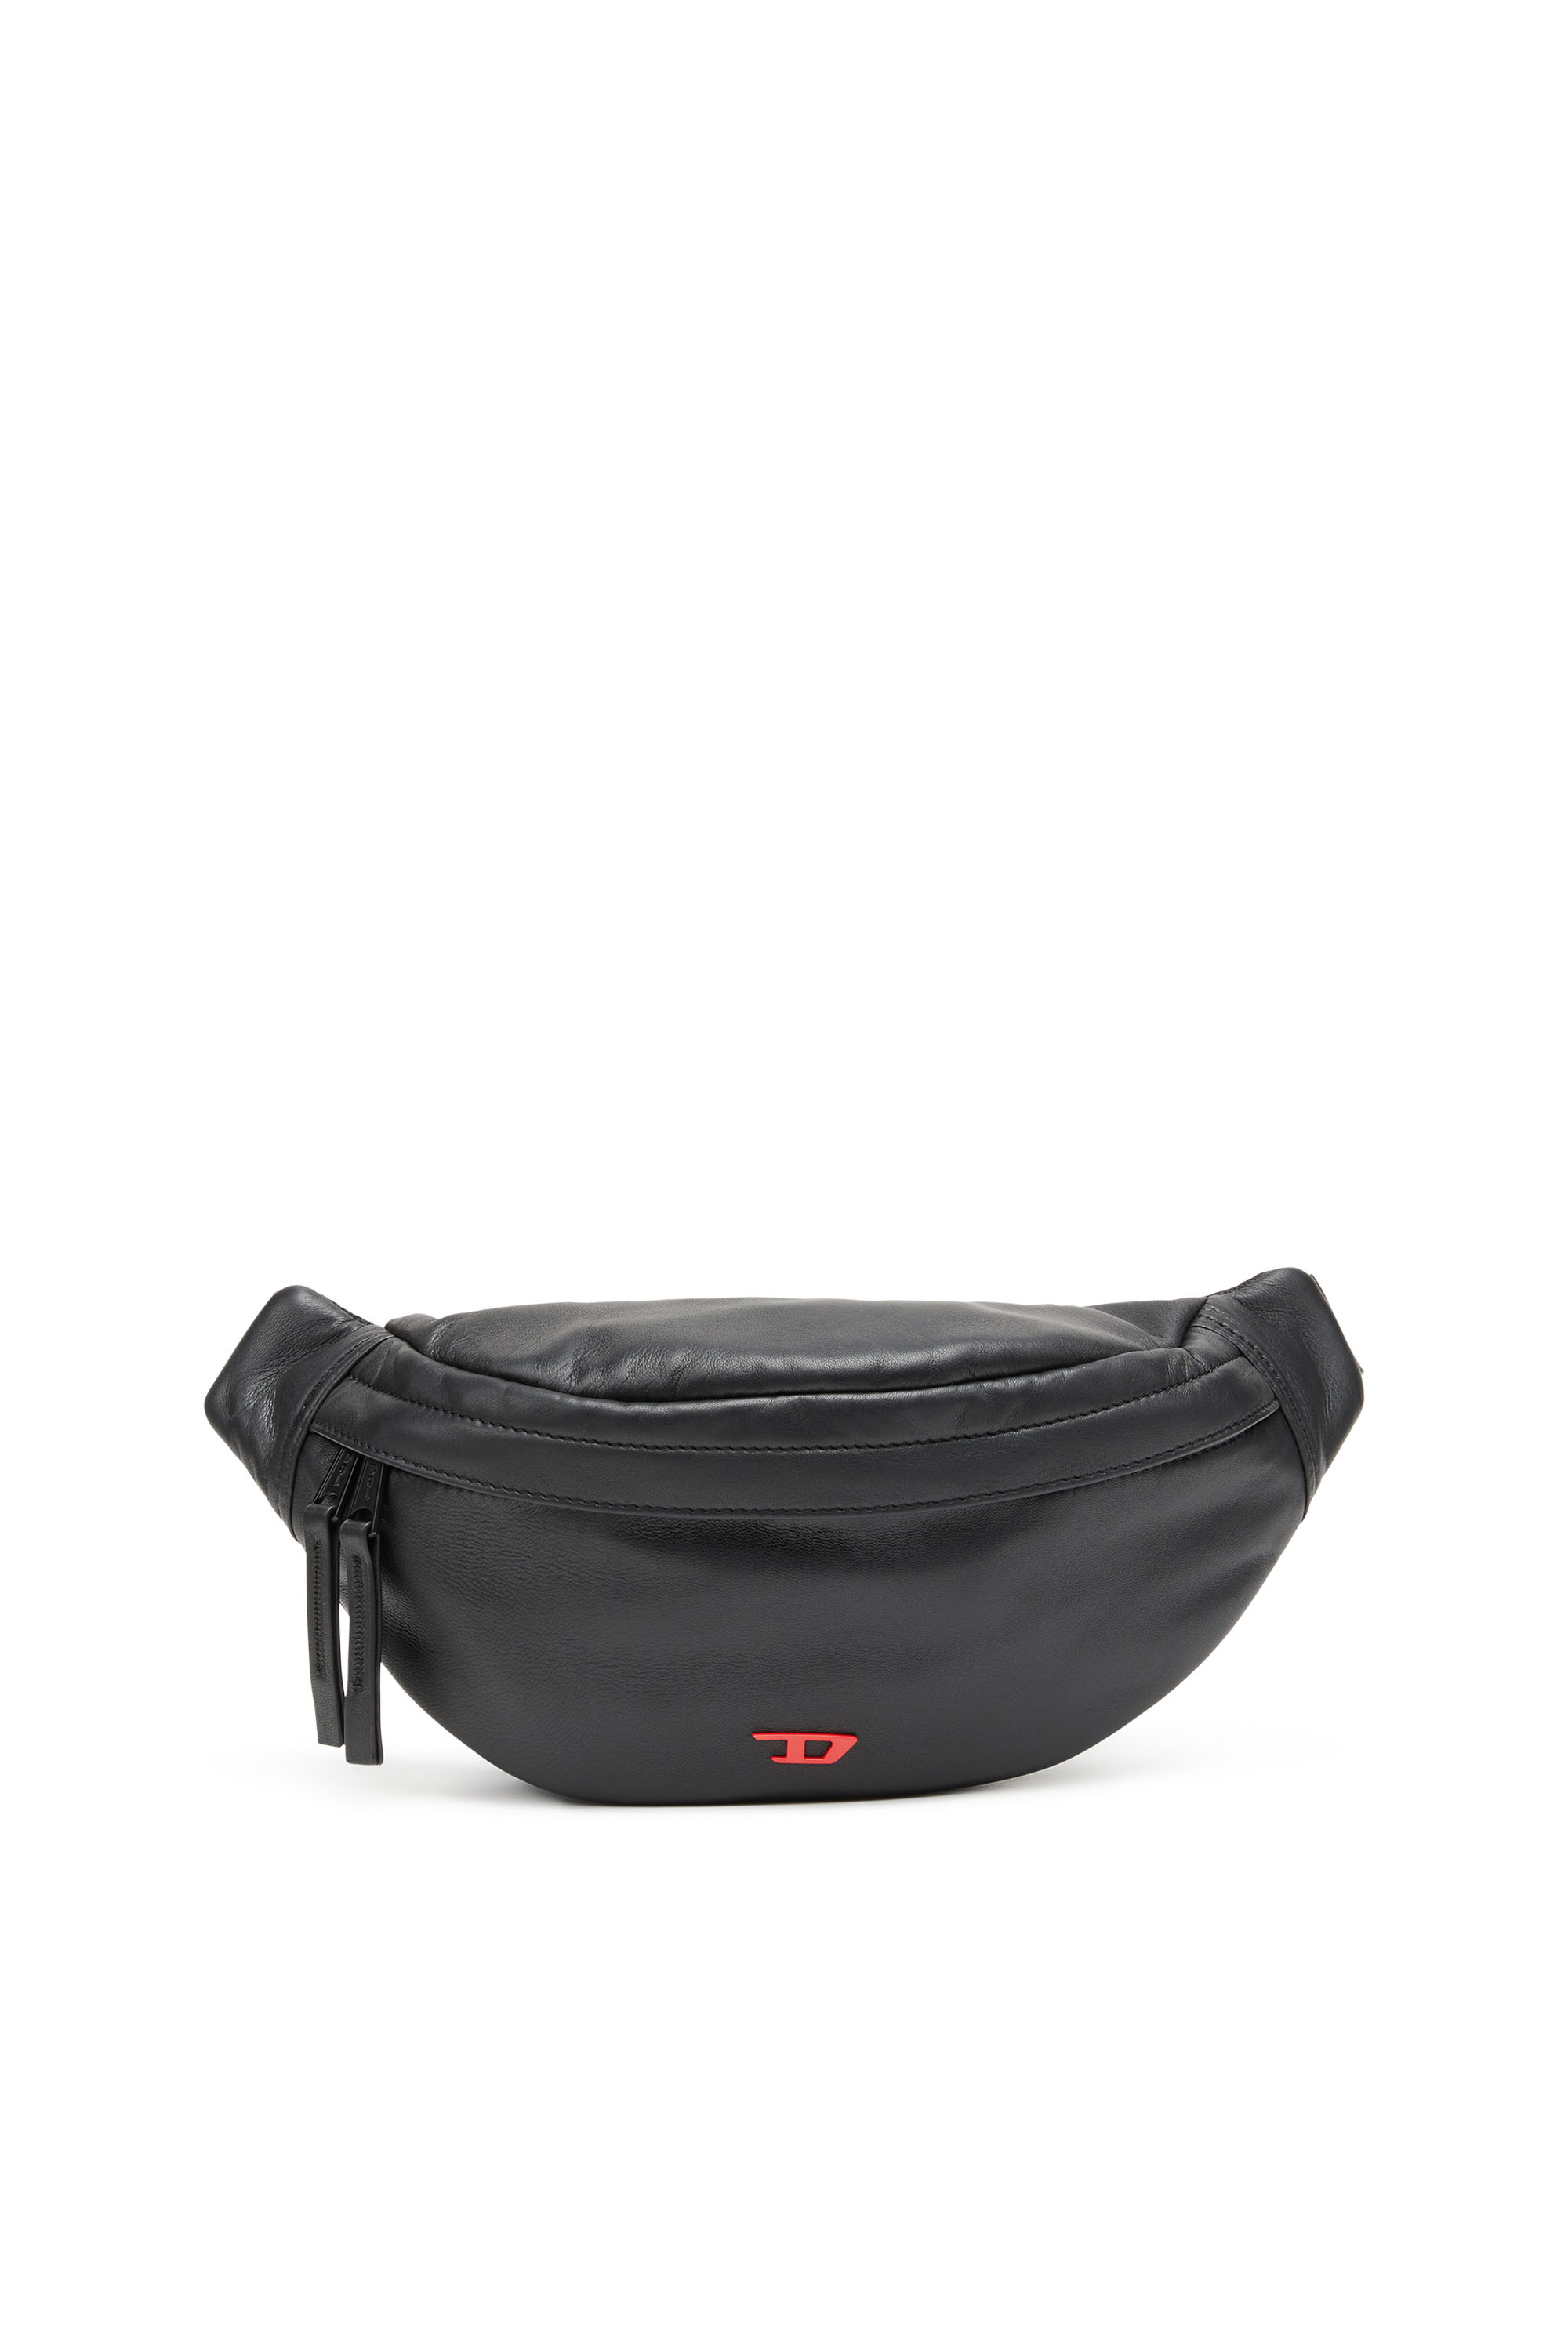 RAVE BELTBAG Rave Beltbag Belt Bag - Leather belt bag with metal D